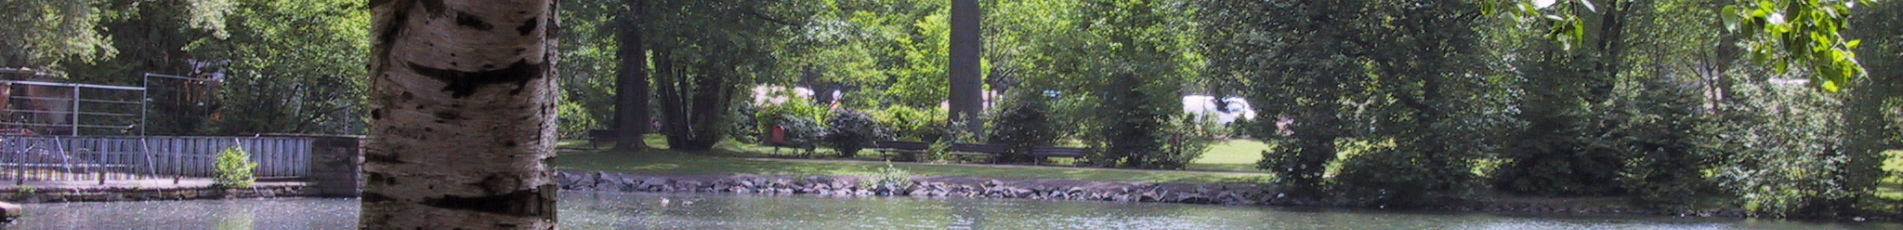 Auf dem großen See schwimmen einige Enten.